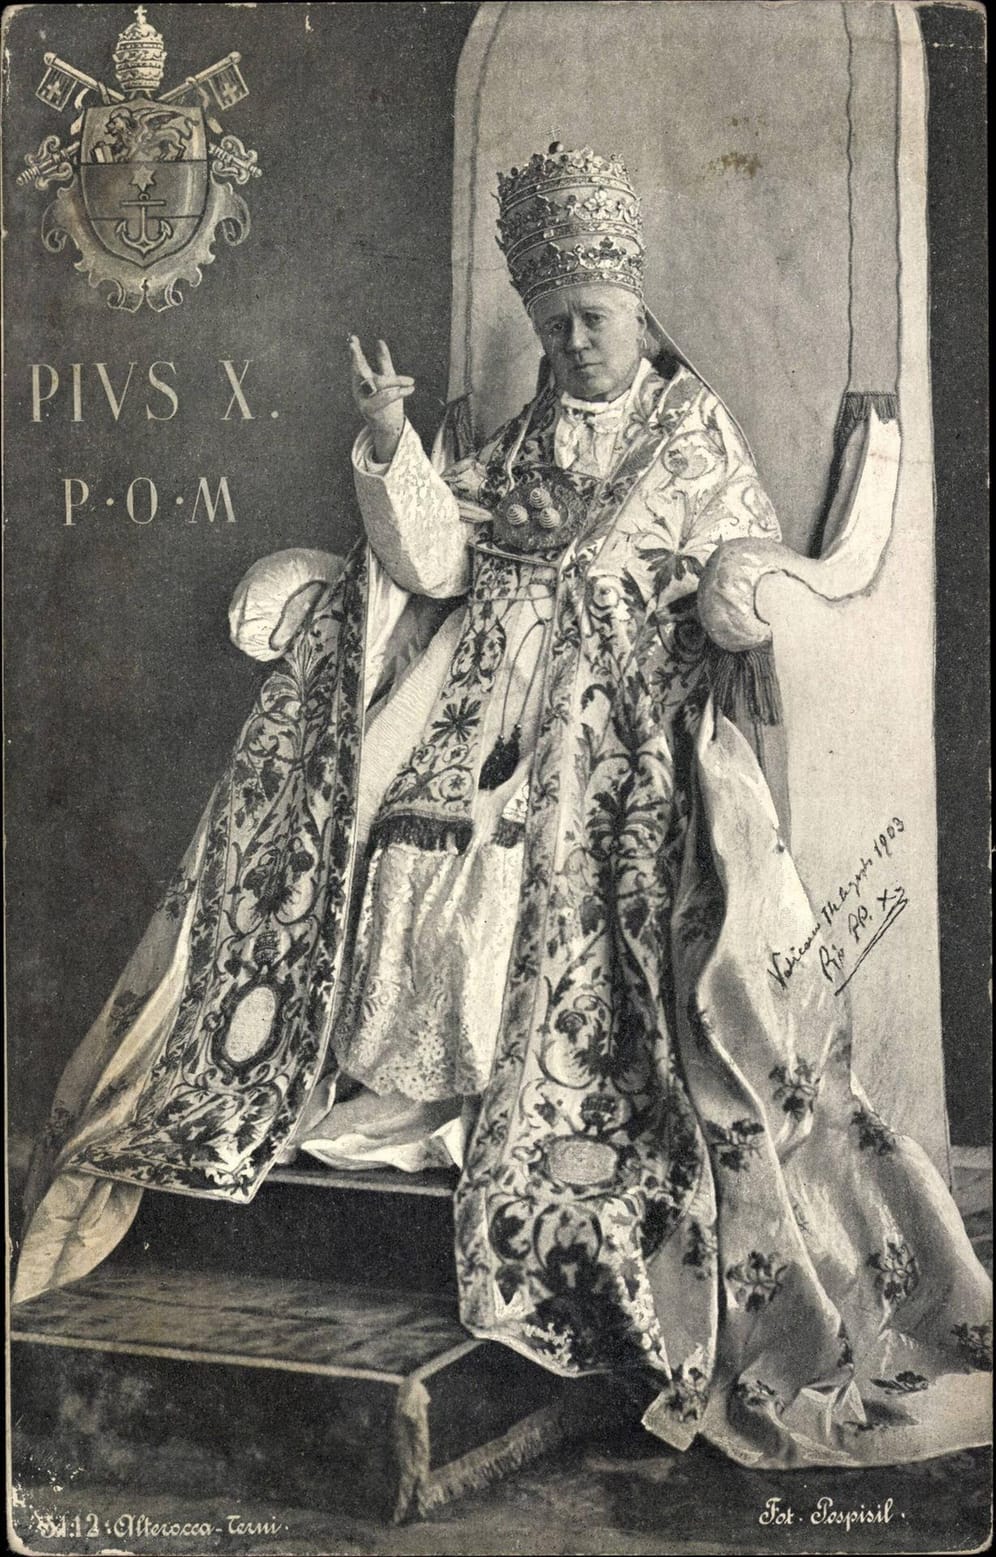 Zwischen 1903 und 1914 (Aufnahmedatum unbekannt): Papst Pius X. stammte aus dem Kaisertum Österreich. Sein bürgerlicher Name war Giuseppe Melchiorre Sarto.